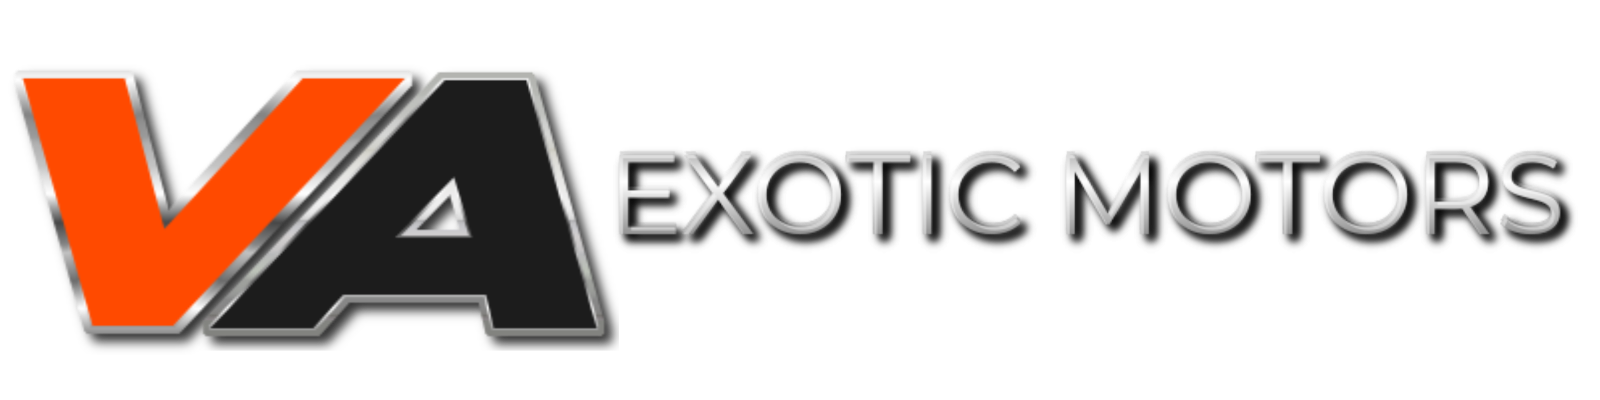 VA Exotic Motors LLC